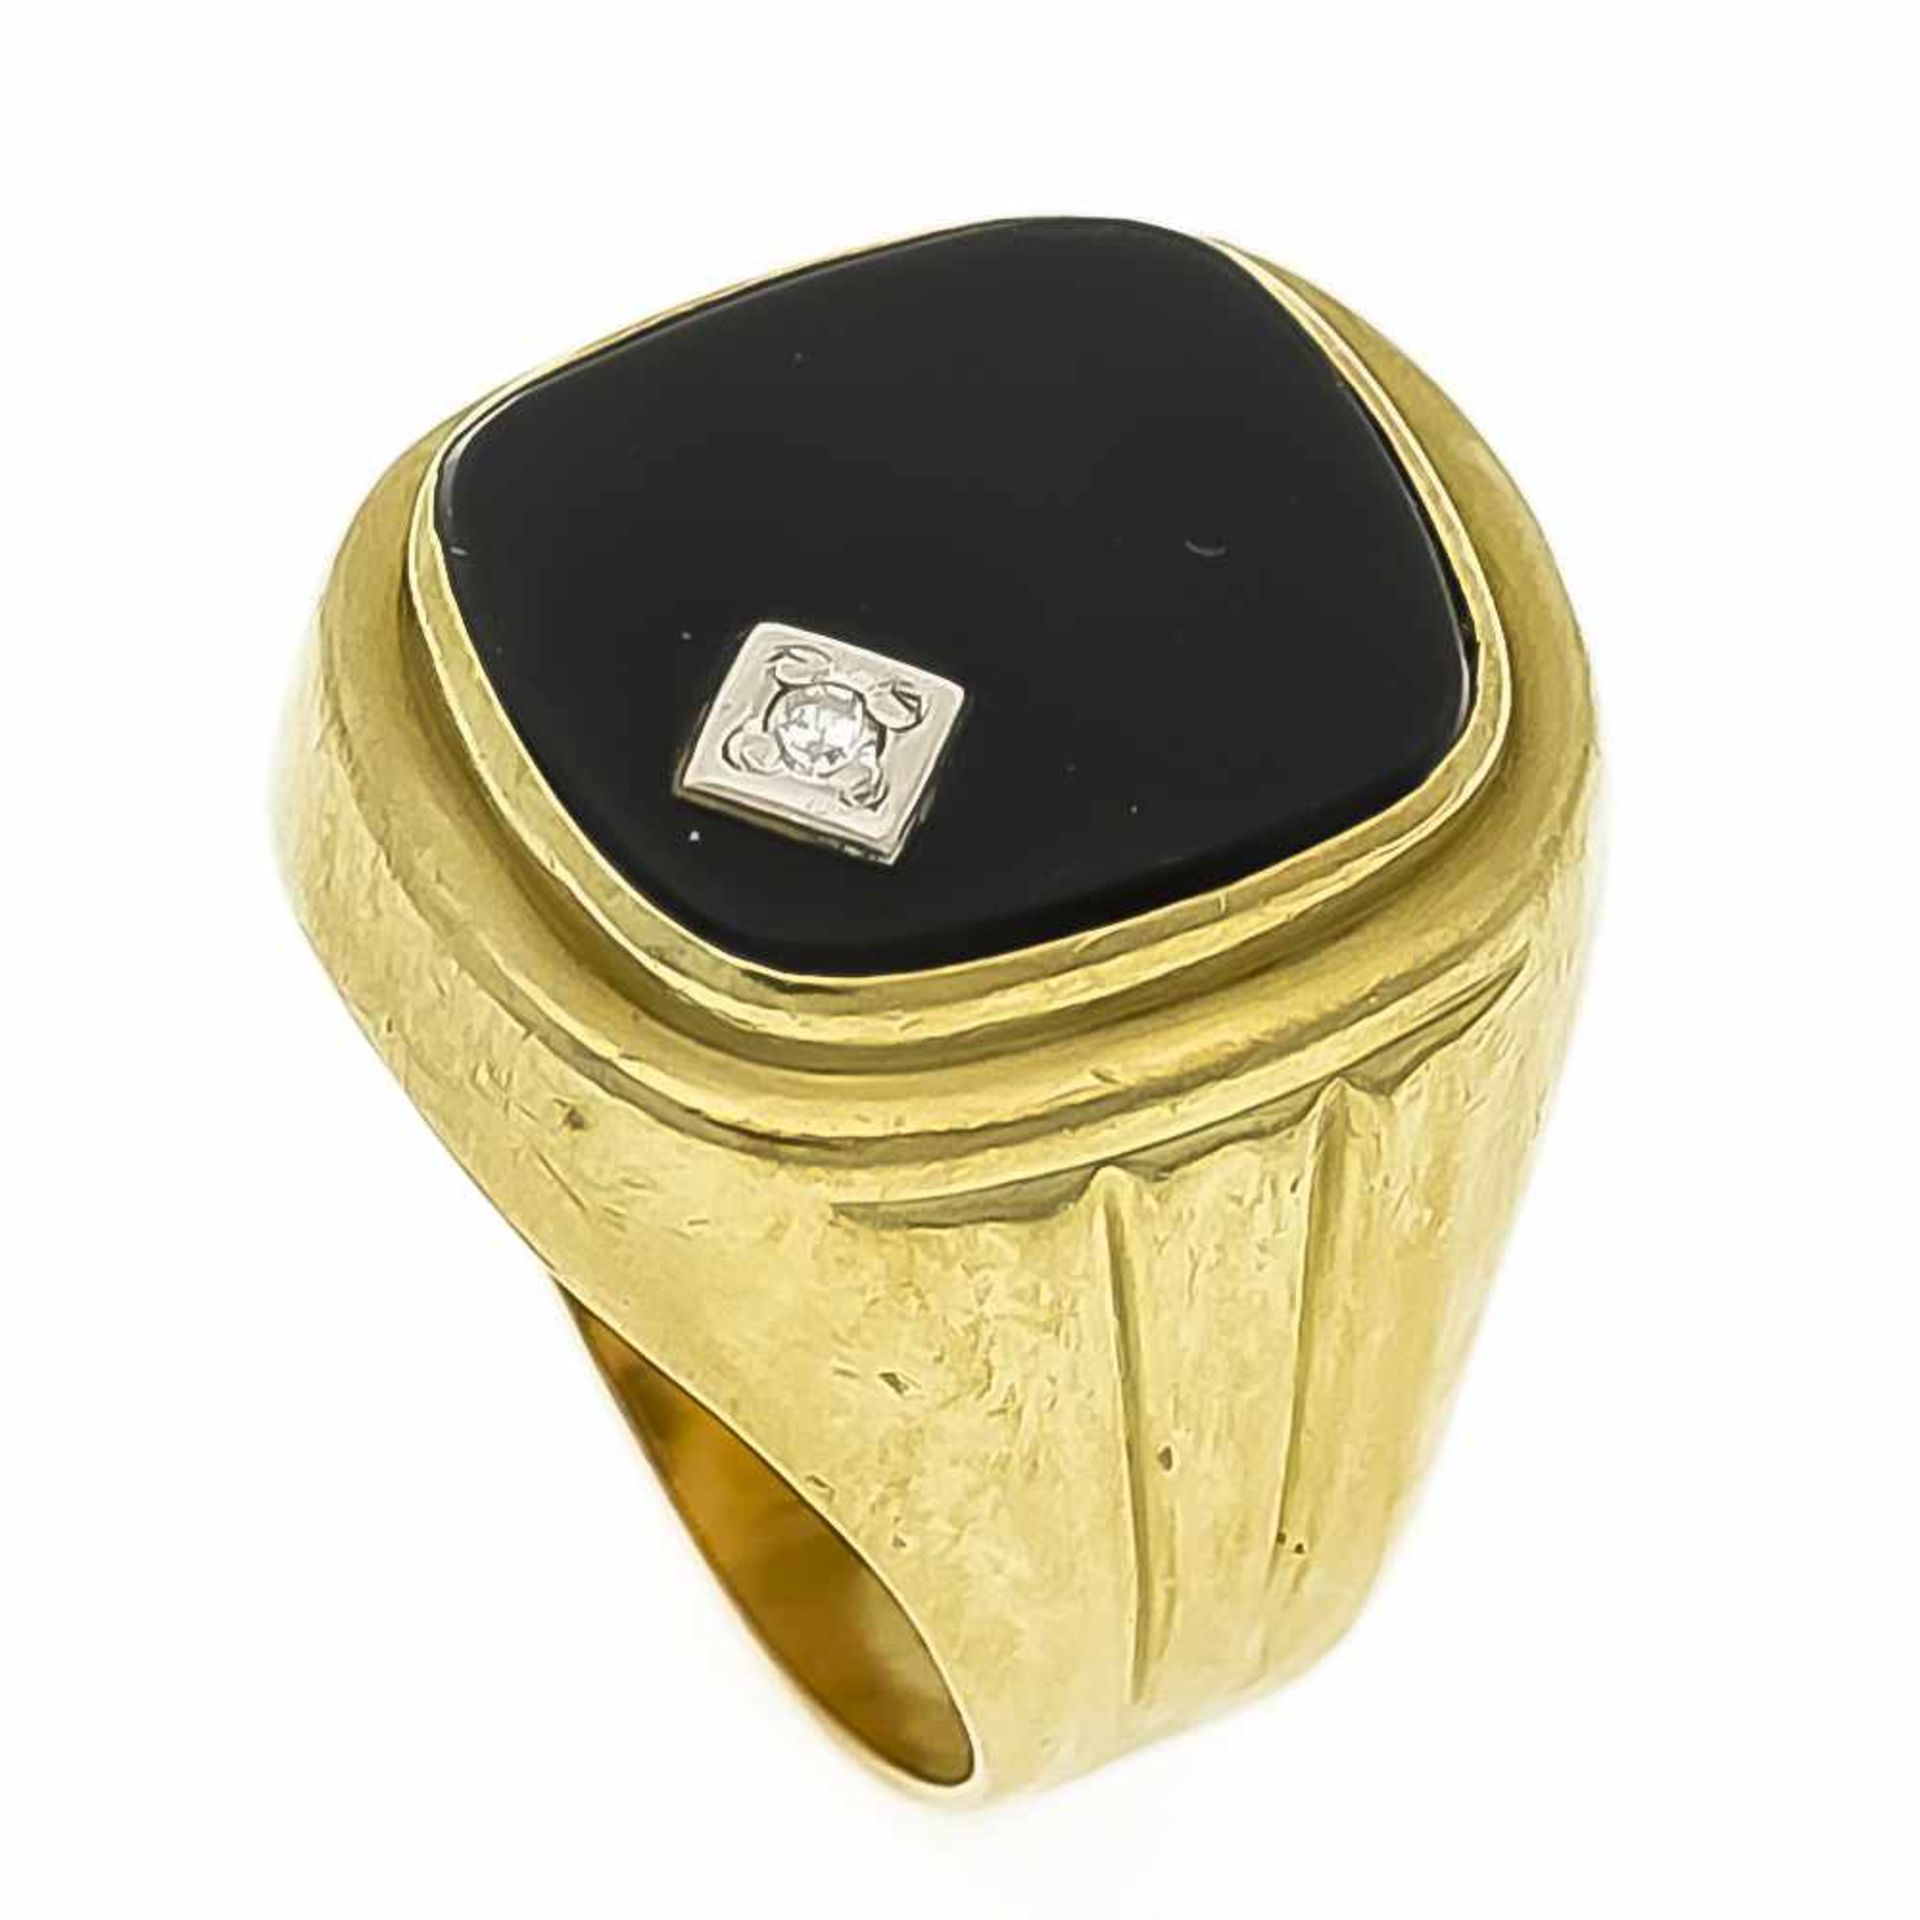 Herren-Onyx-Diamant-Ring GG 585/000 mit einer rechteckigen Onyxplatte 17 x 13 mm undDiamant, RG